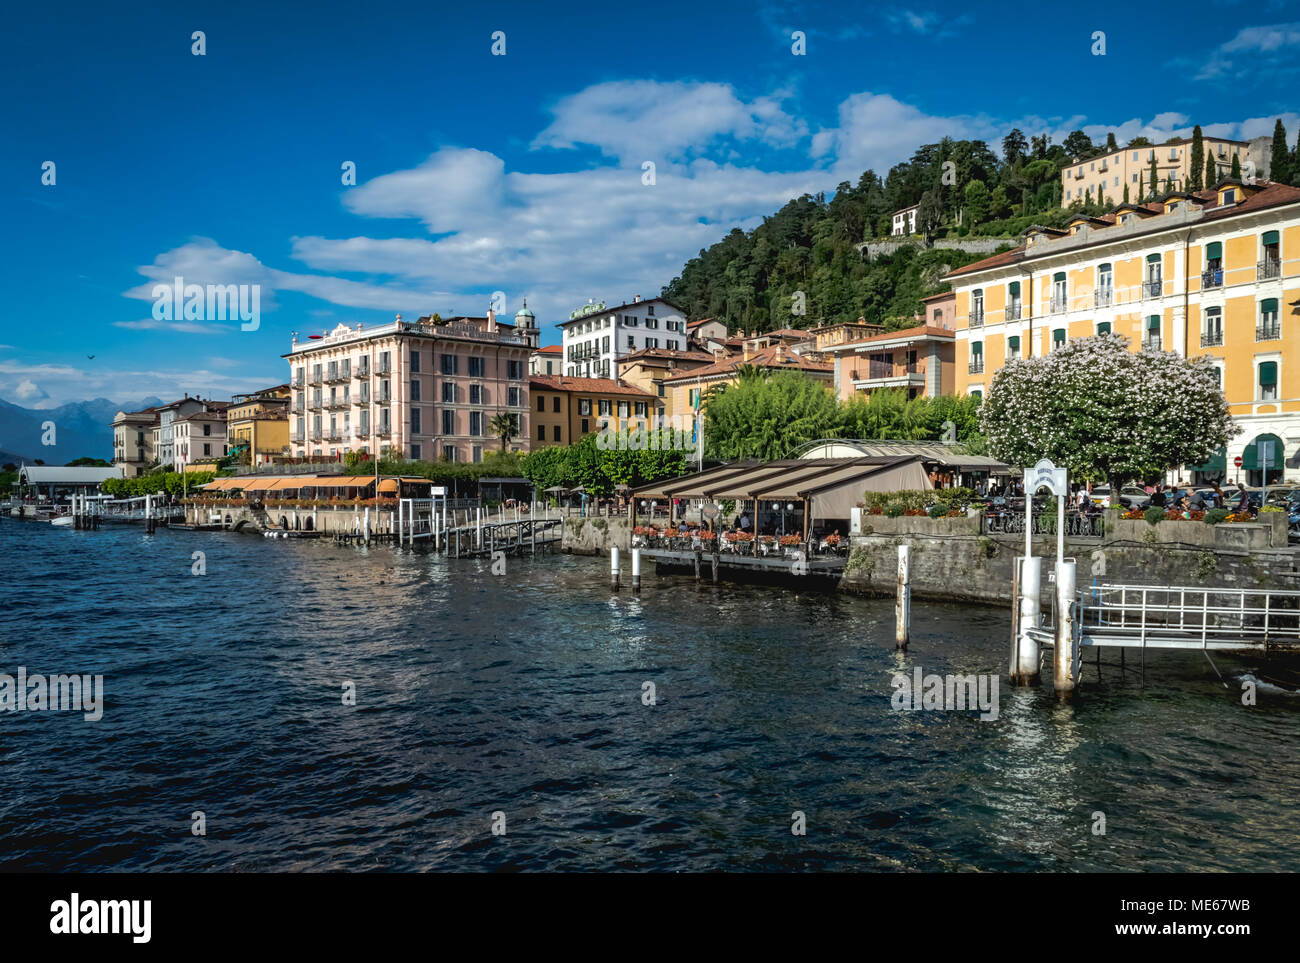 Summer evening in Bellagio - Lago di Como - Italy Stock Photo